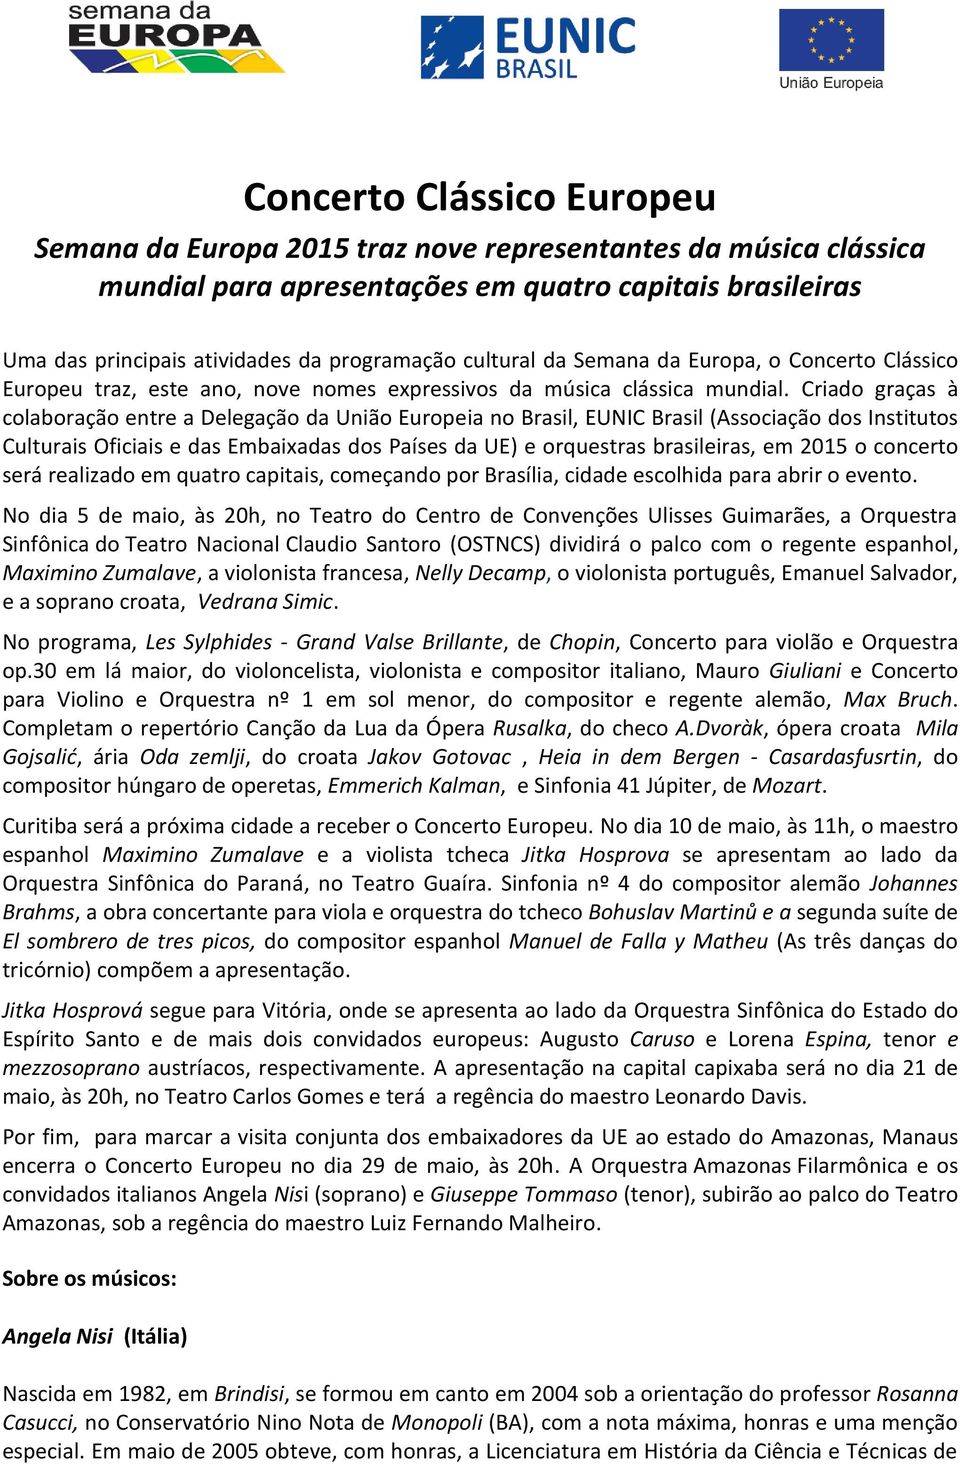 Criado graças à colaboração entre a Delegação da União Europeia no Brasil, EUNIC Brasil (Associação dos Institutos Culturais Oficiais e das Embaixadas dos Países da UE) e orquestras brasileiras, em